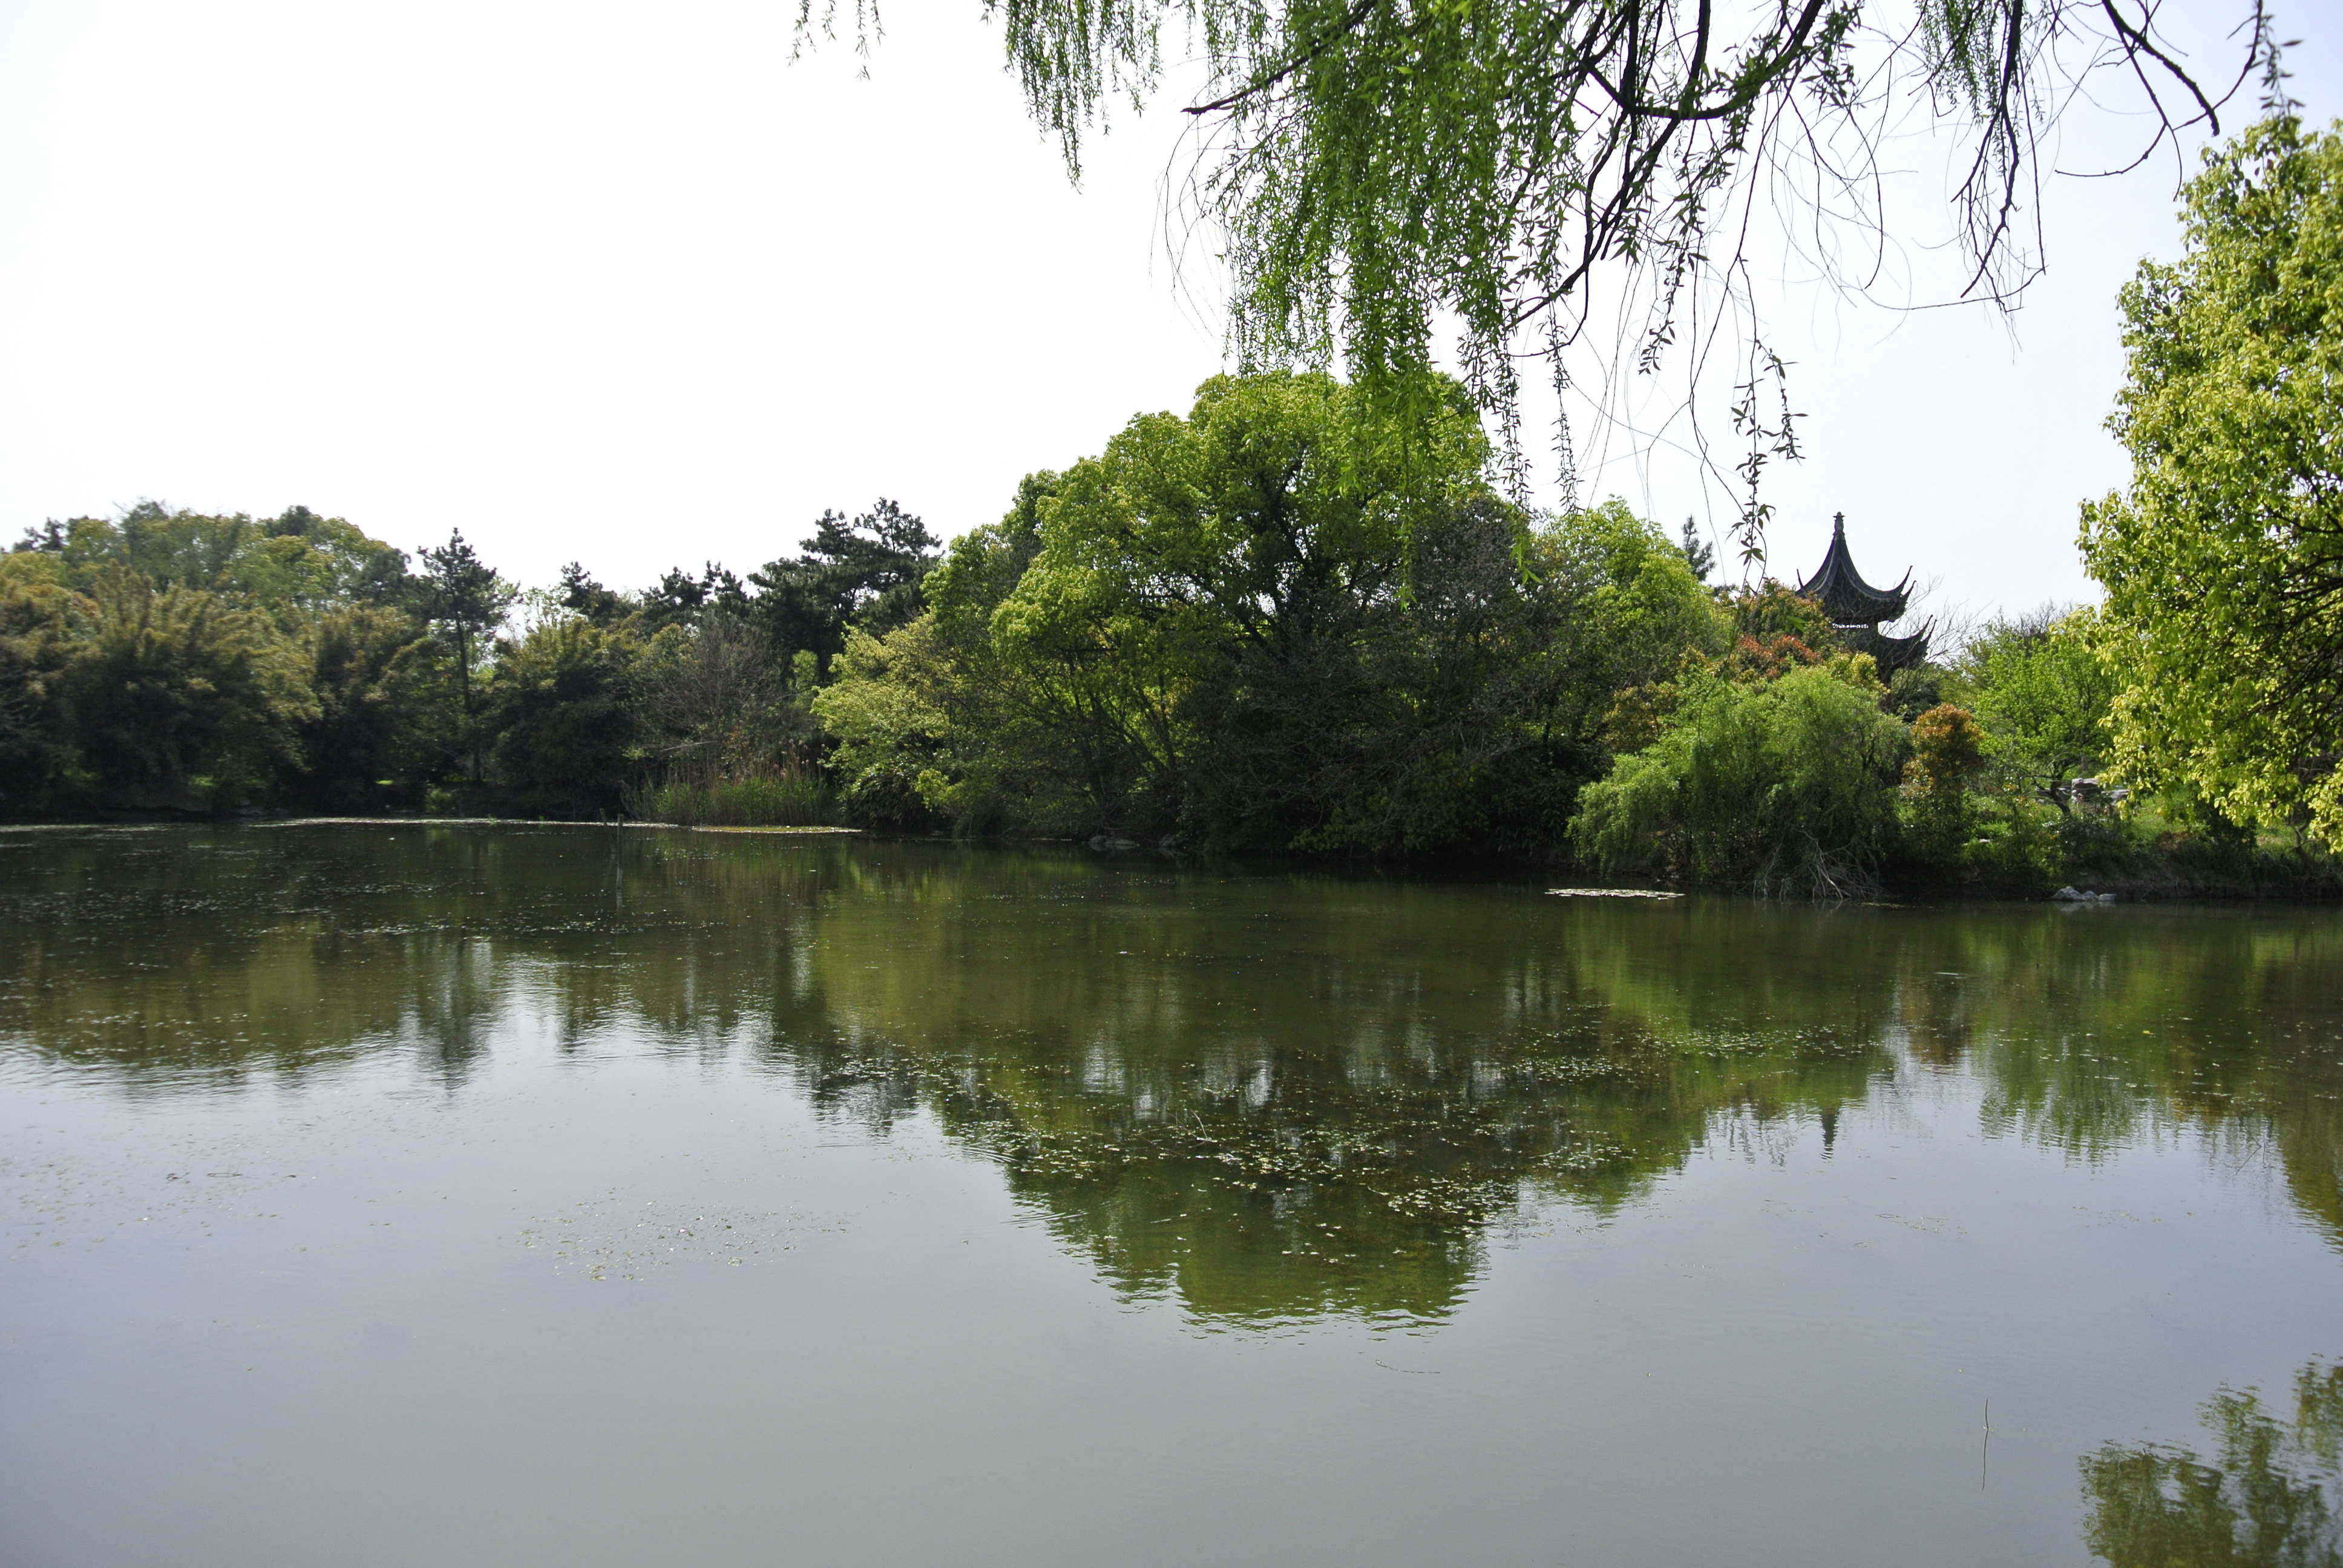 上海大观园梅园图片